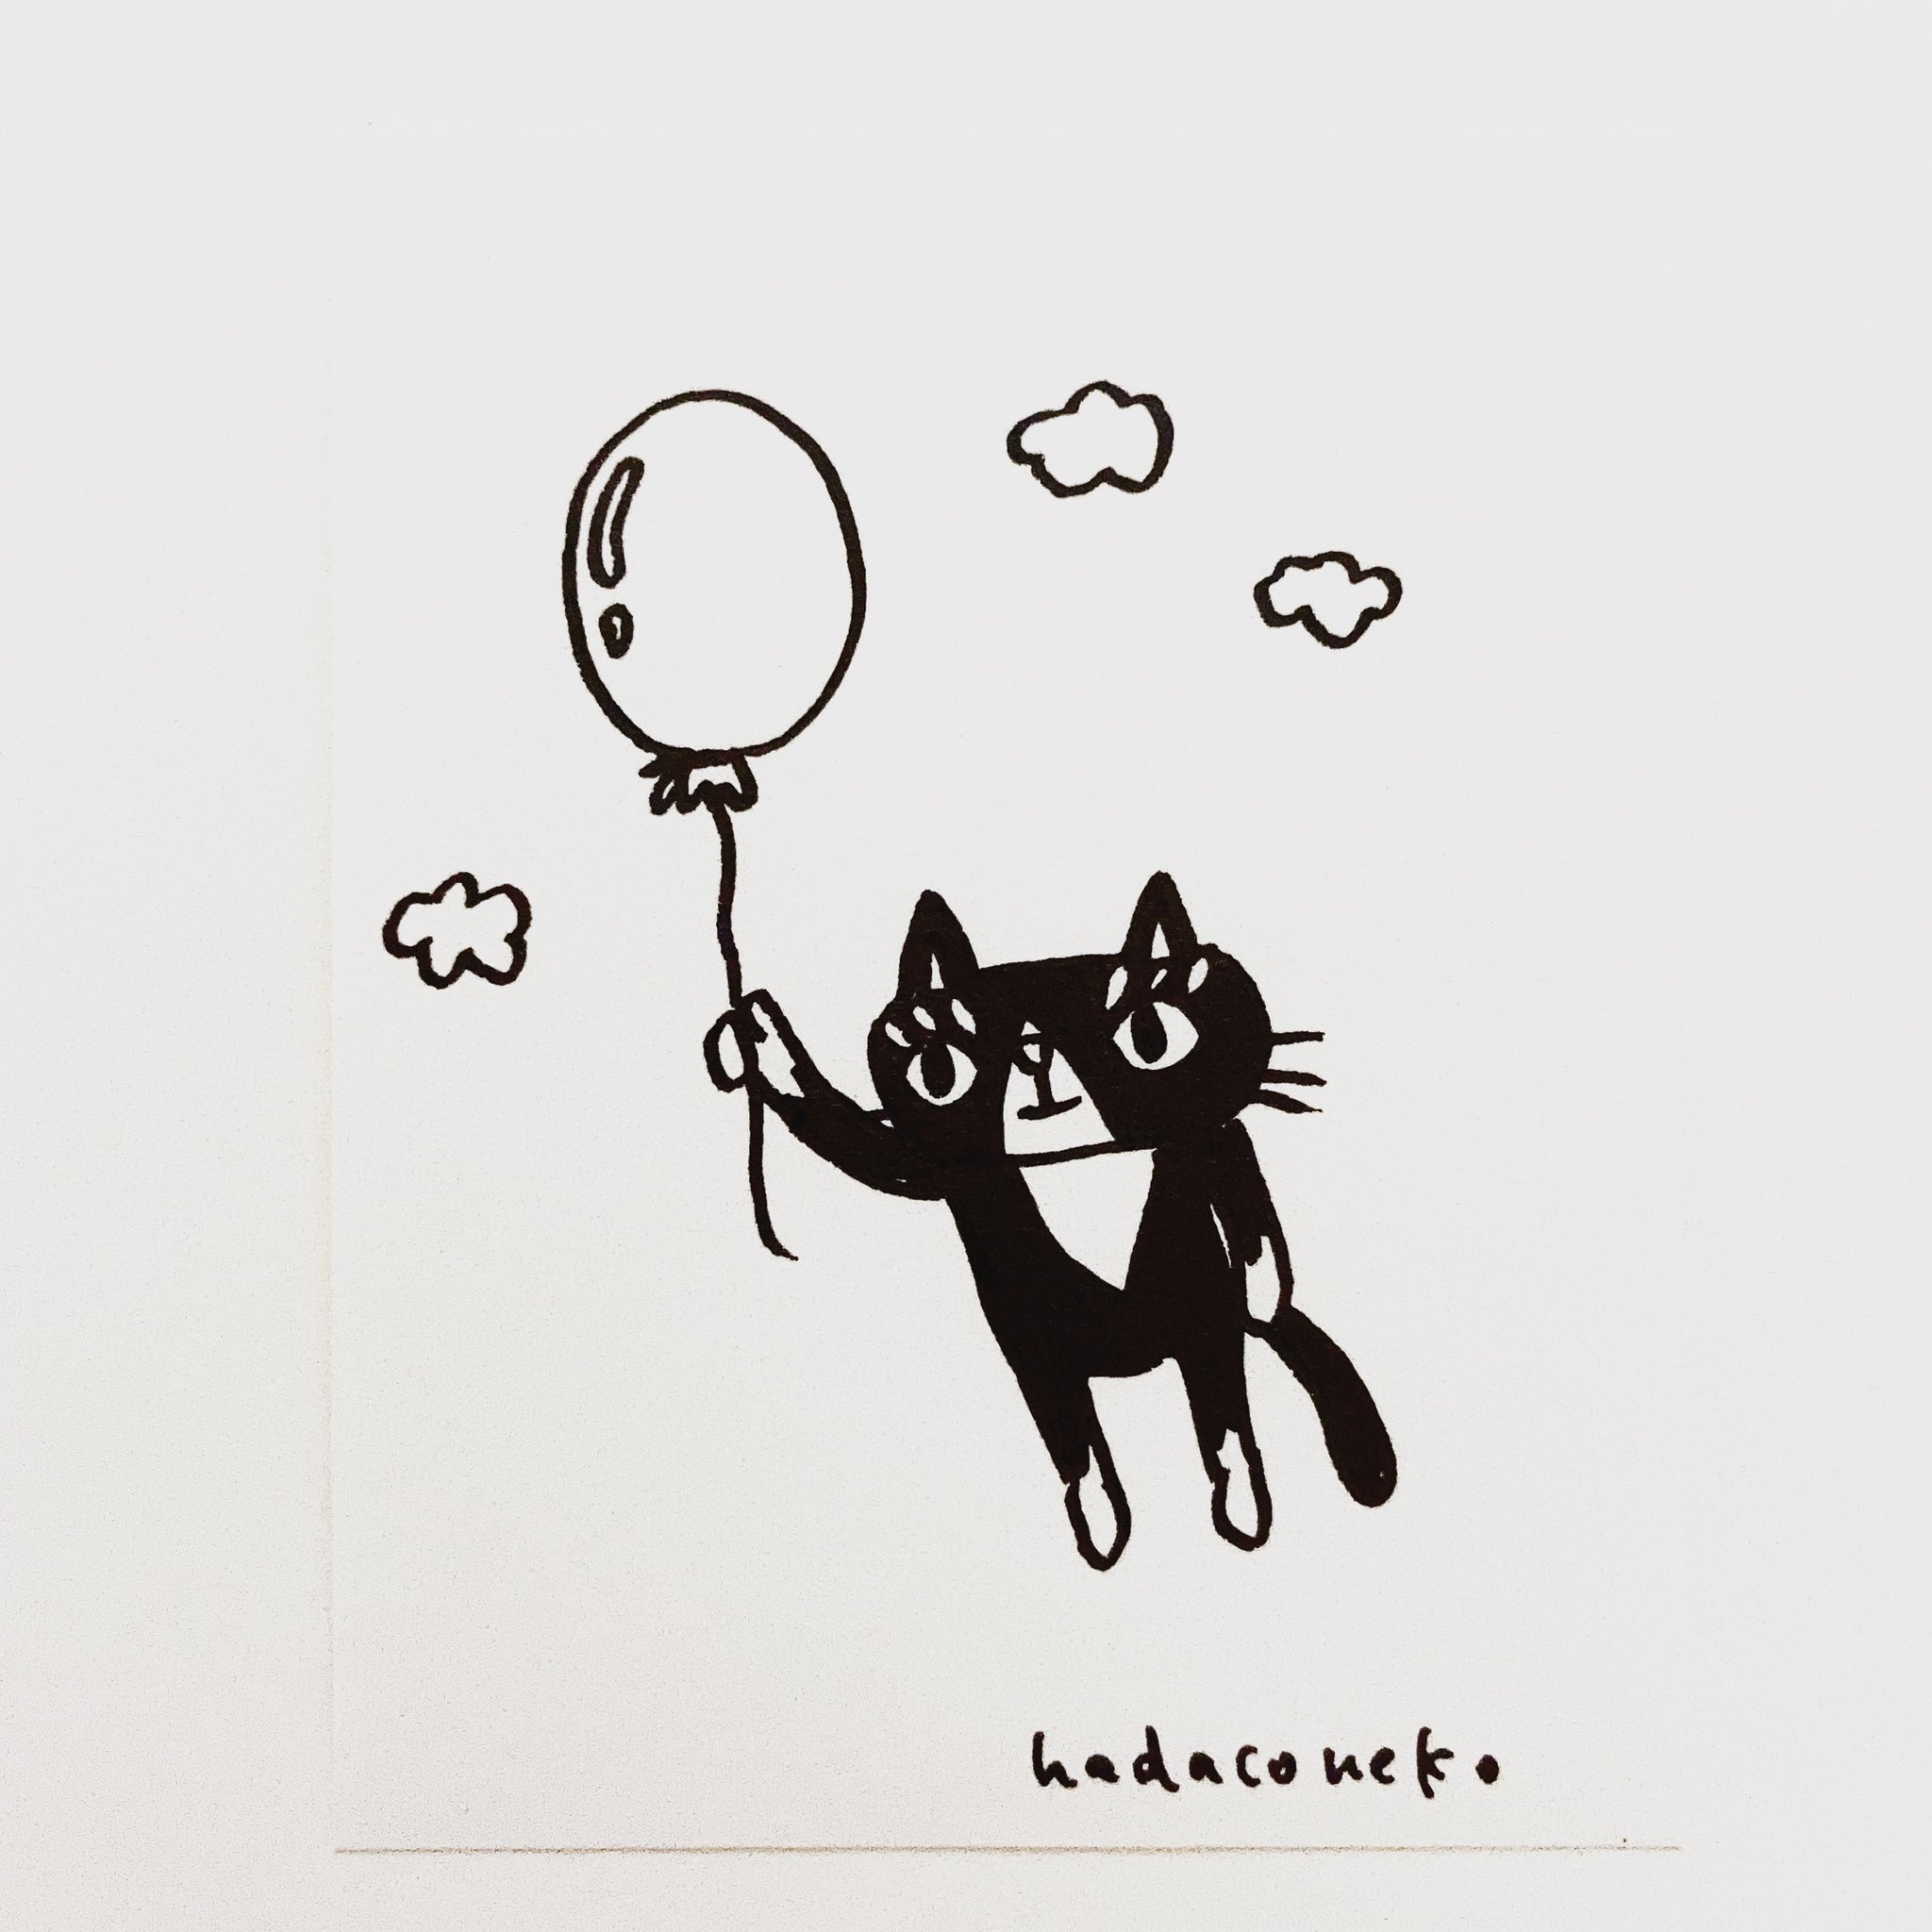 肌子 今日のイラストはコレ ｪ 風船を使って空を飛んでる猫 イラスト 猫 ネコ ねこ オリジナル ペン画 アナログ画 絵 猫の絵 白黒猫 はちわれ ハチワレ猫 T Co Bur1pvzgr0 Twitter